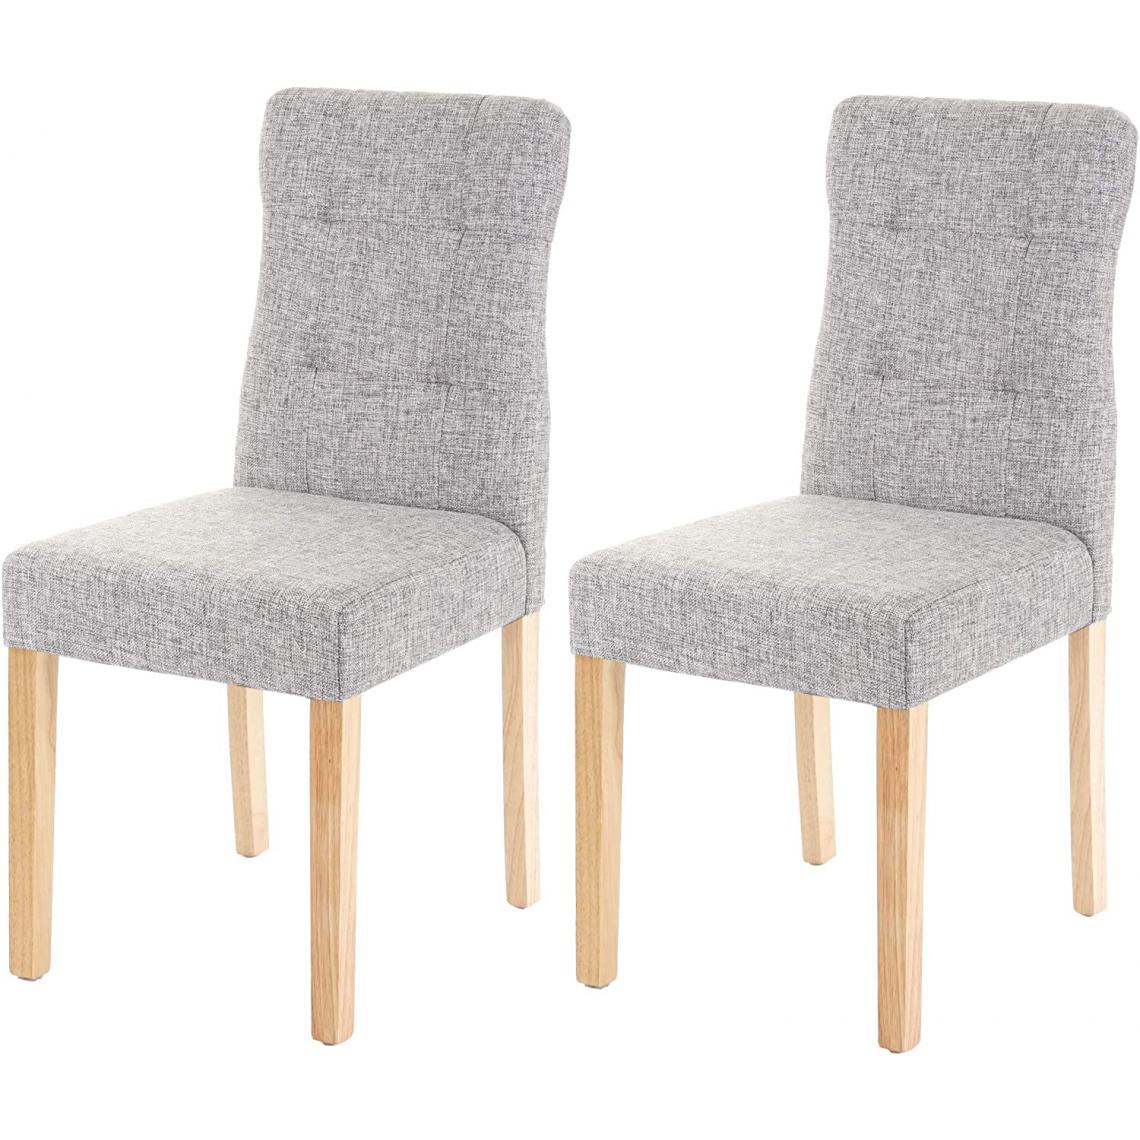 Decoshop26 - Lot de 2 chaises en tissu gris pieds en bois clair CDS04445 - Chaises